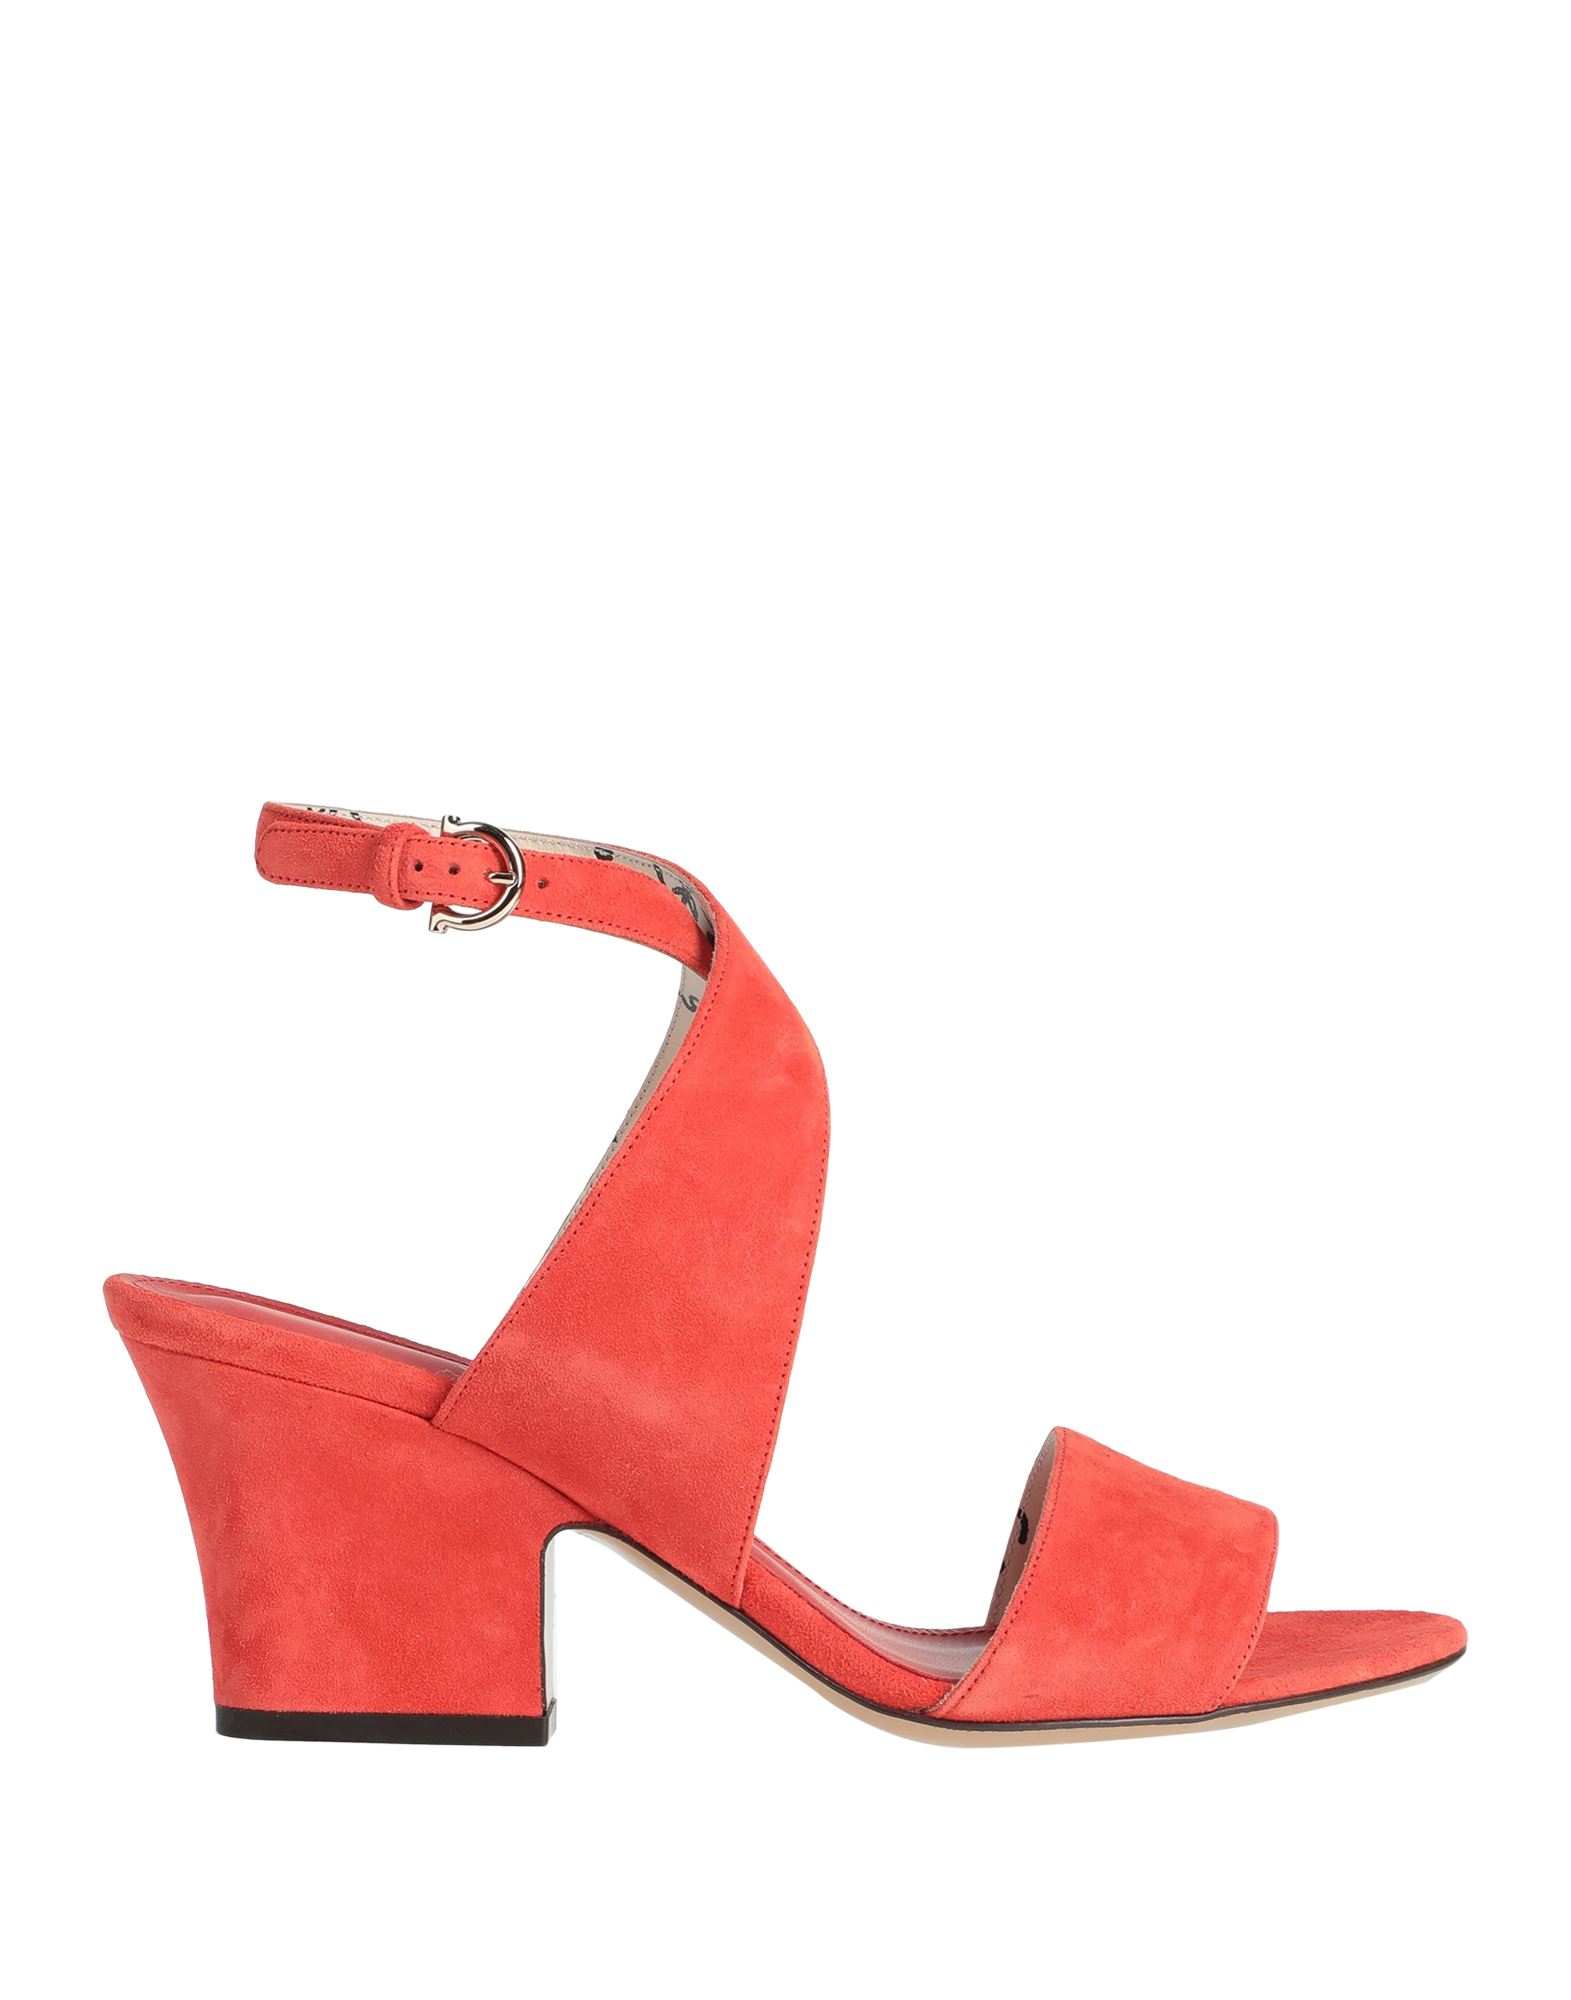 Shop Ferragamo Woman Sandals Orange Size 8 Calfskin